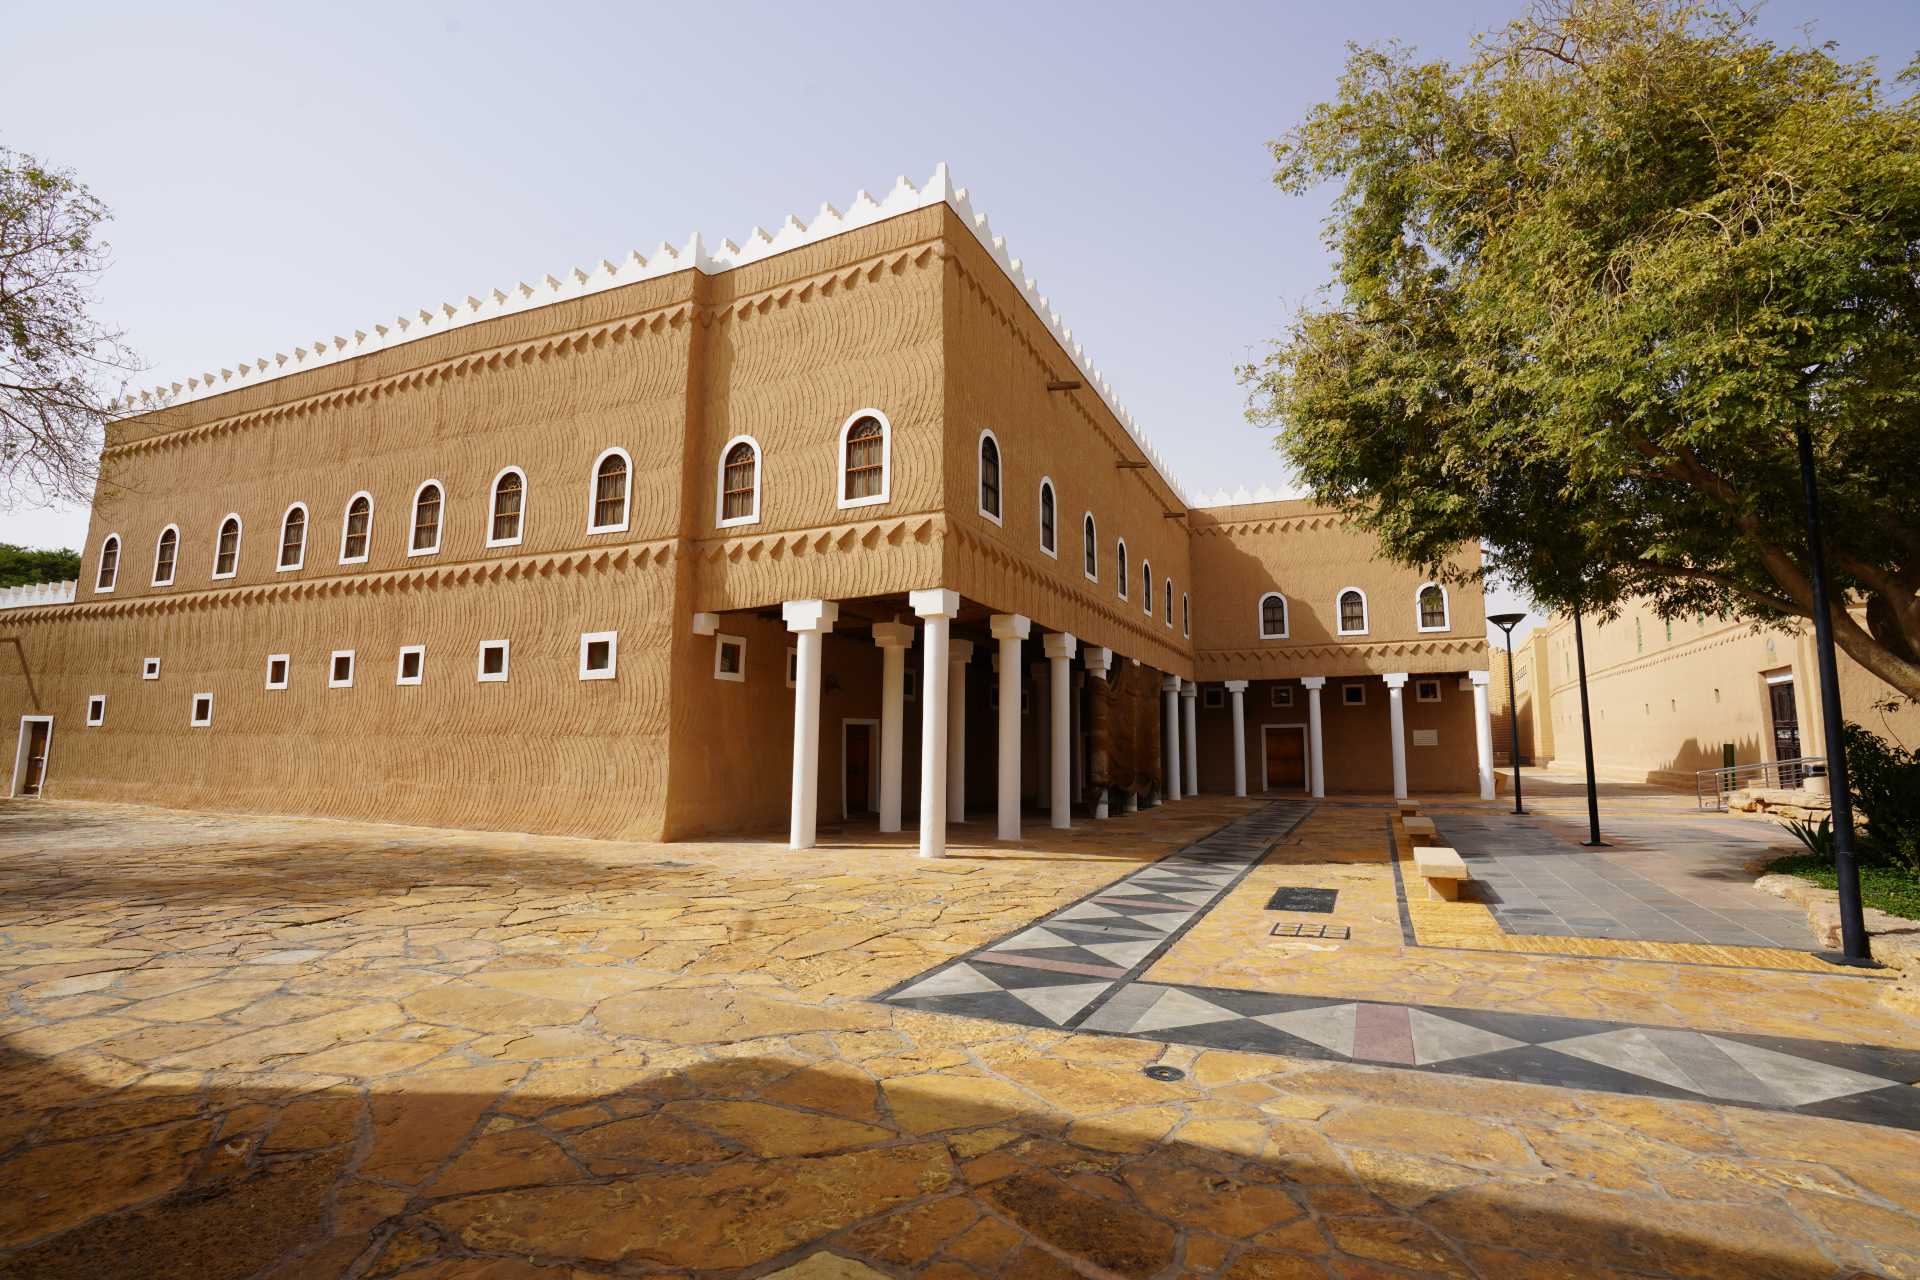 أستاذ التاريخ بجامعة الملك سعود: “قصر المربع” عاش فيه الملك عبدالعزيز منذ عام 1939م حتى وفاته